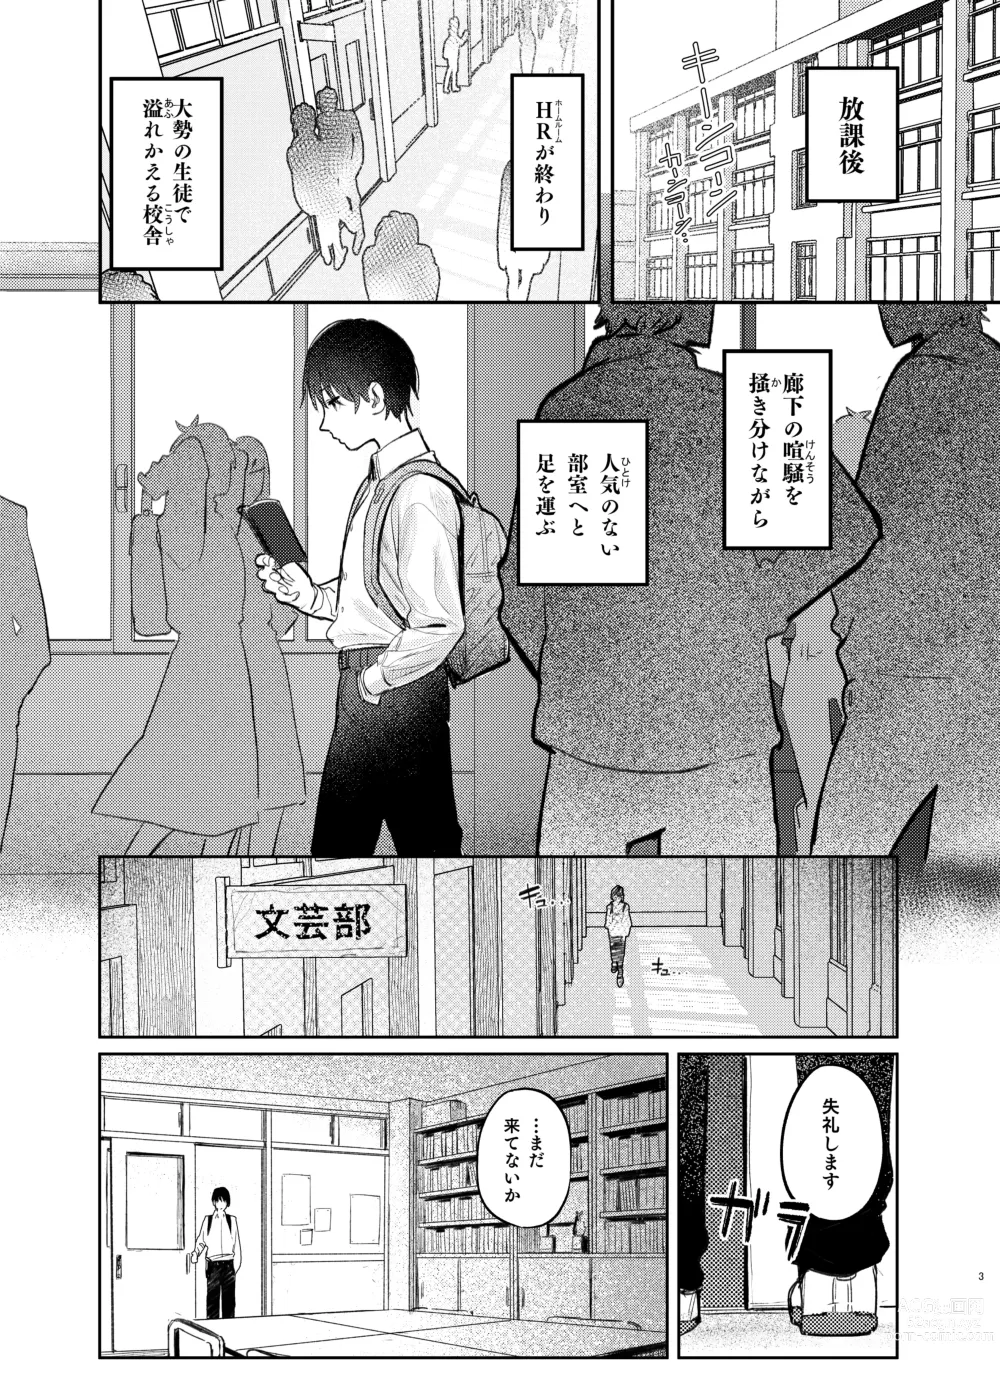 Page 3 of doujinshi Kunikida Senpai no Kakushigoto